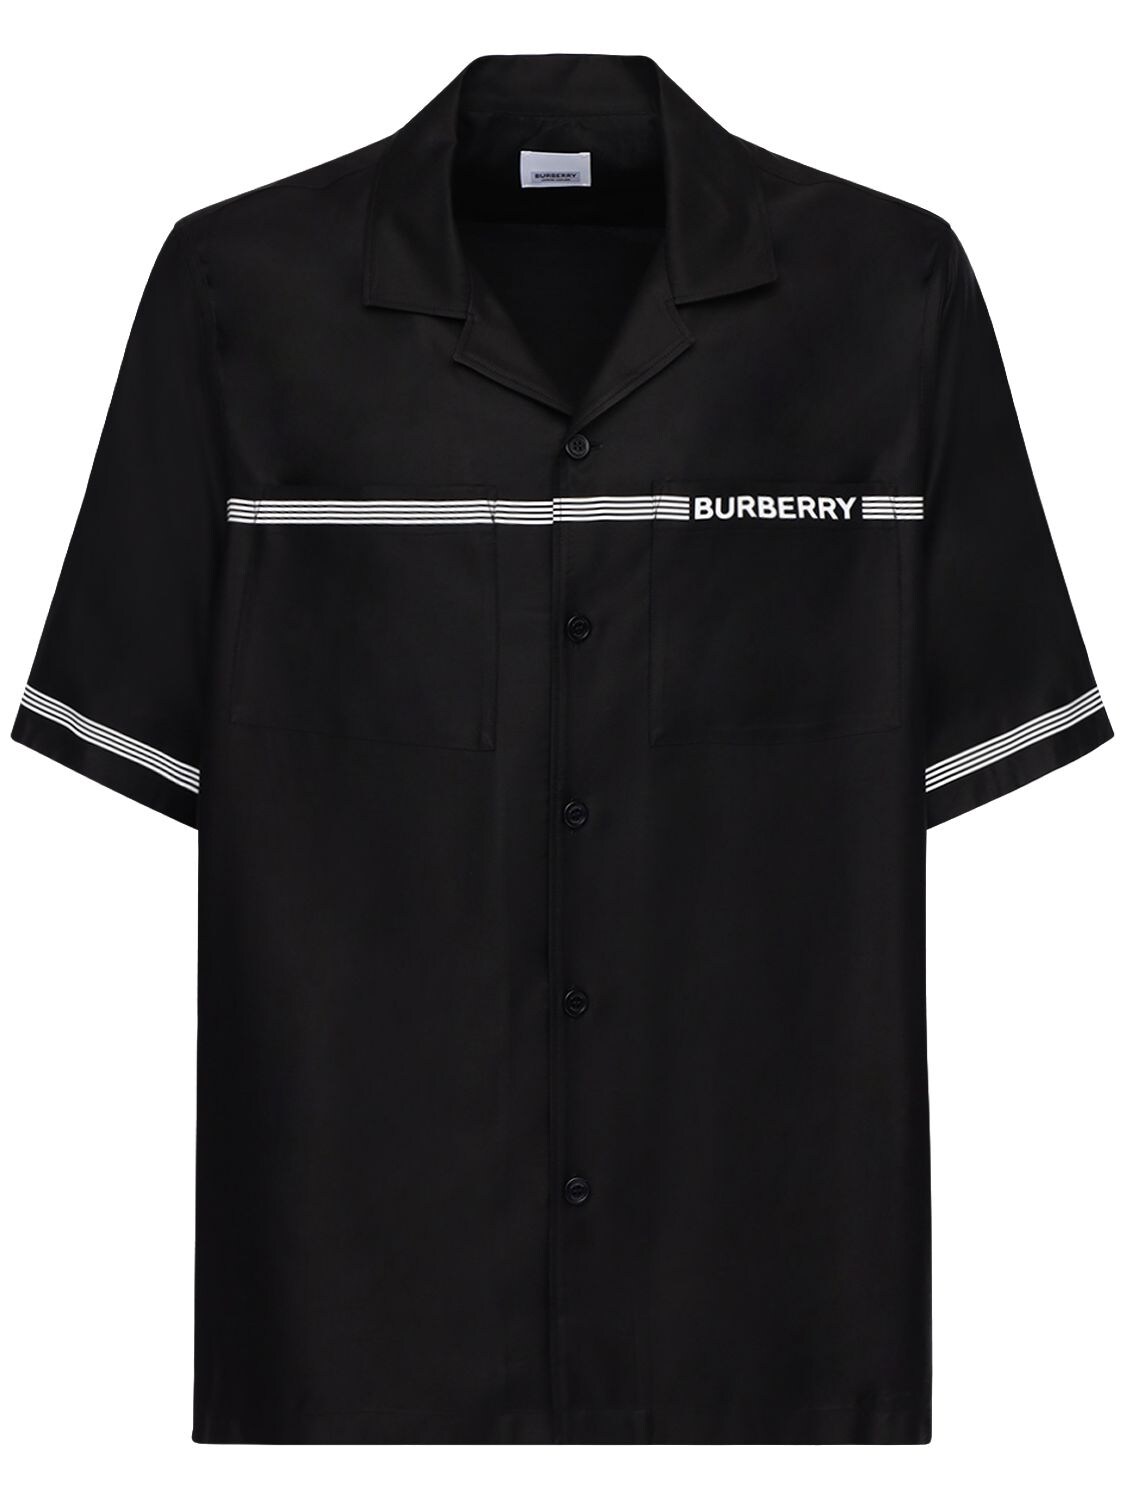 burberry bowling shirt